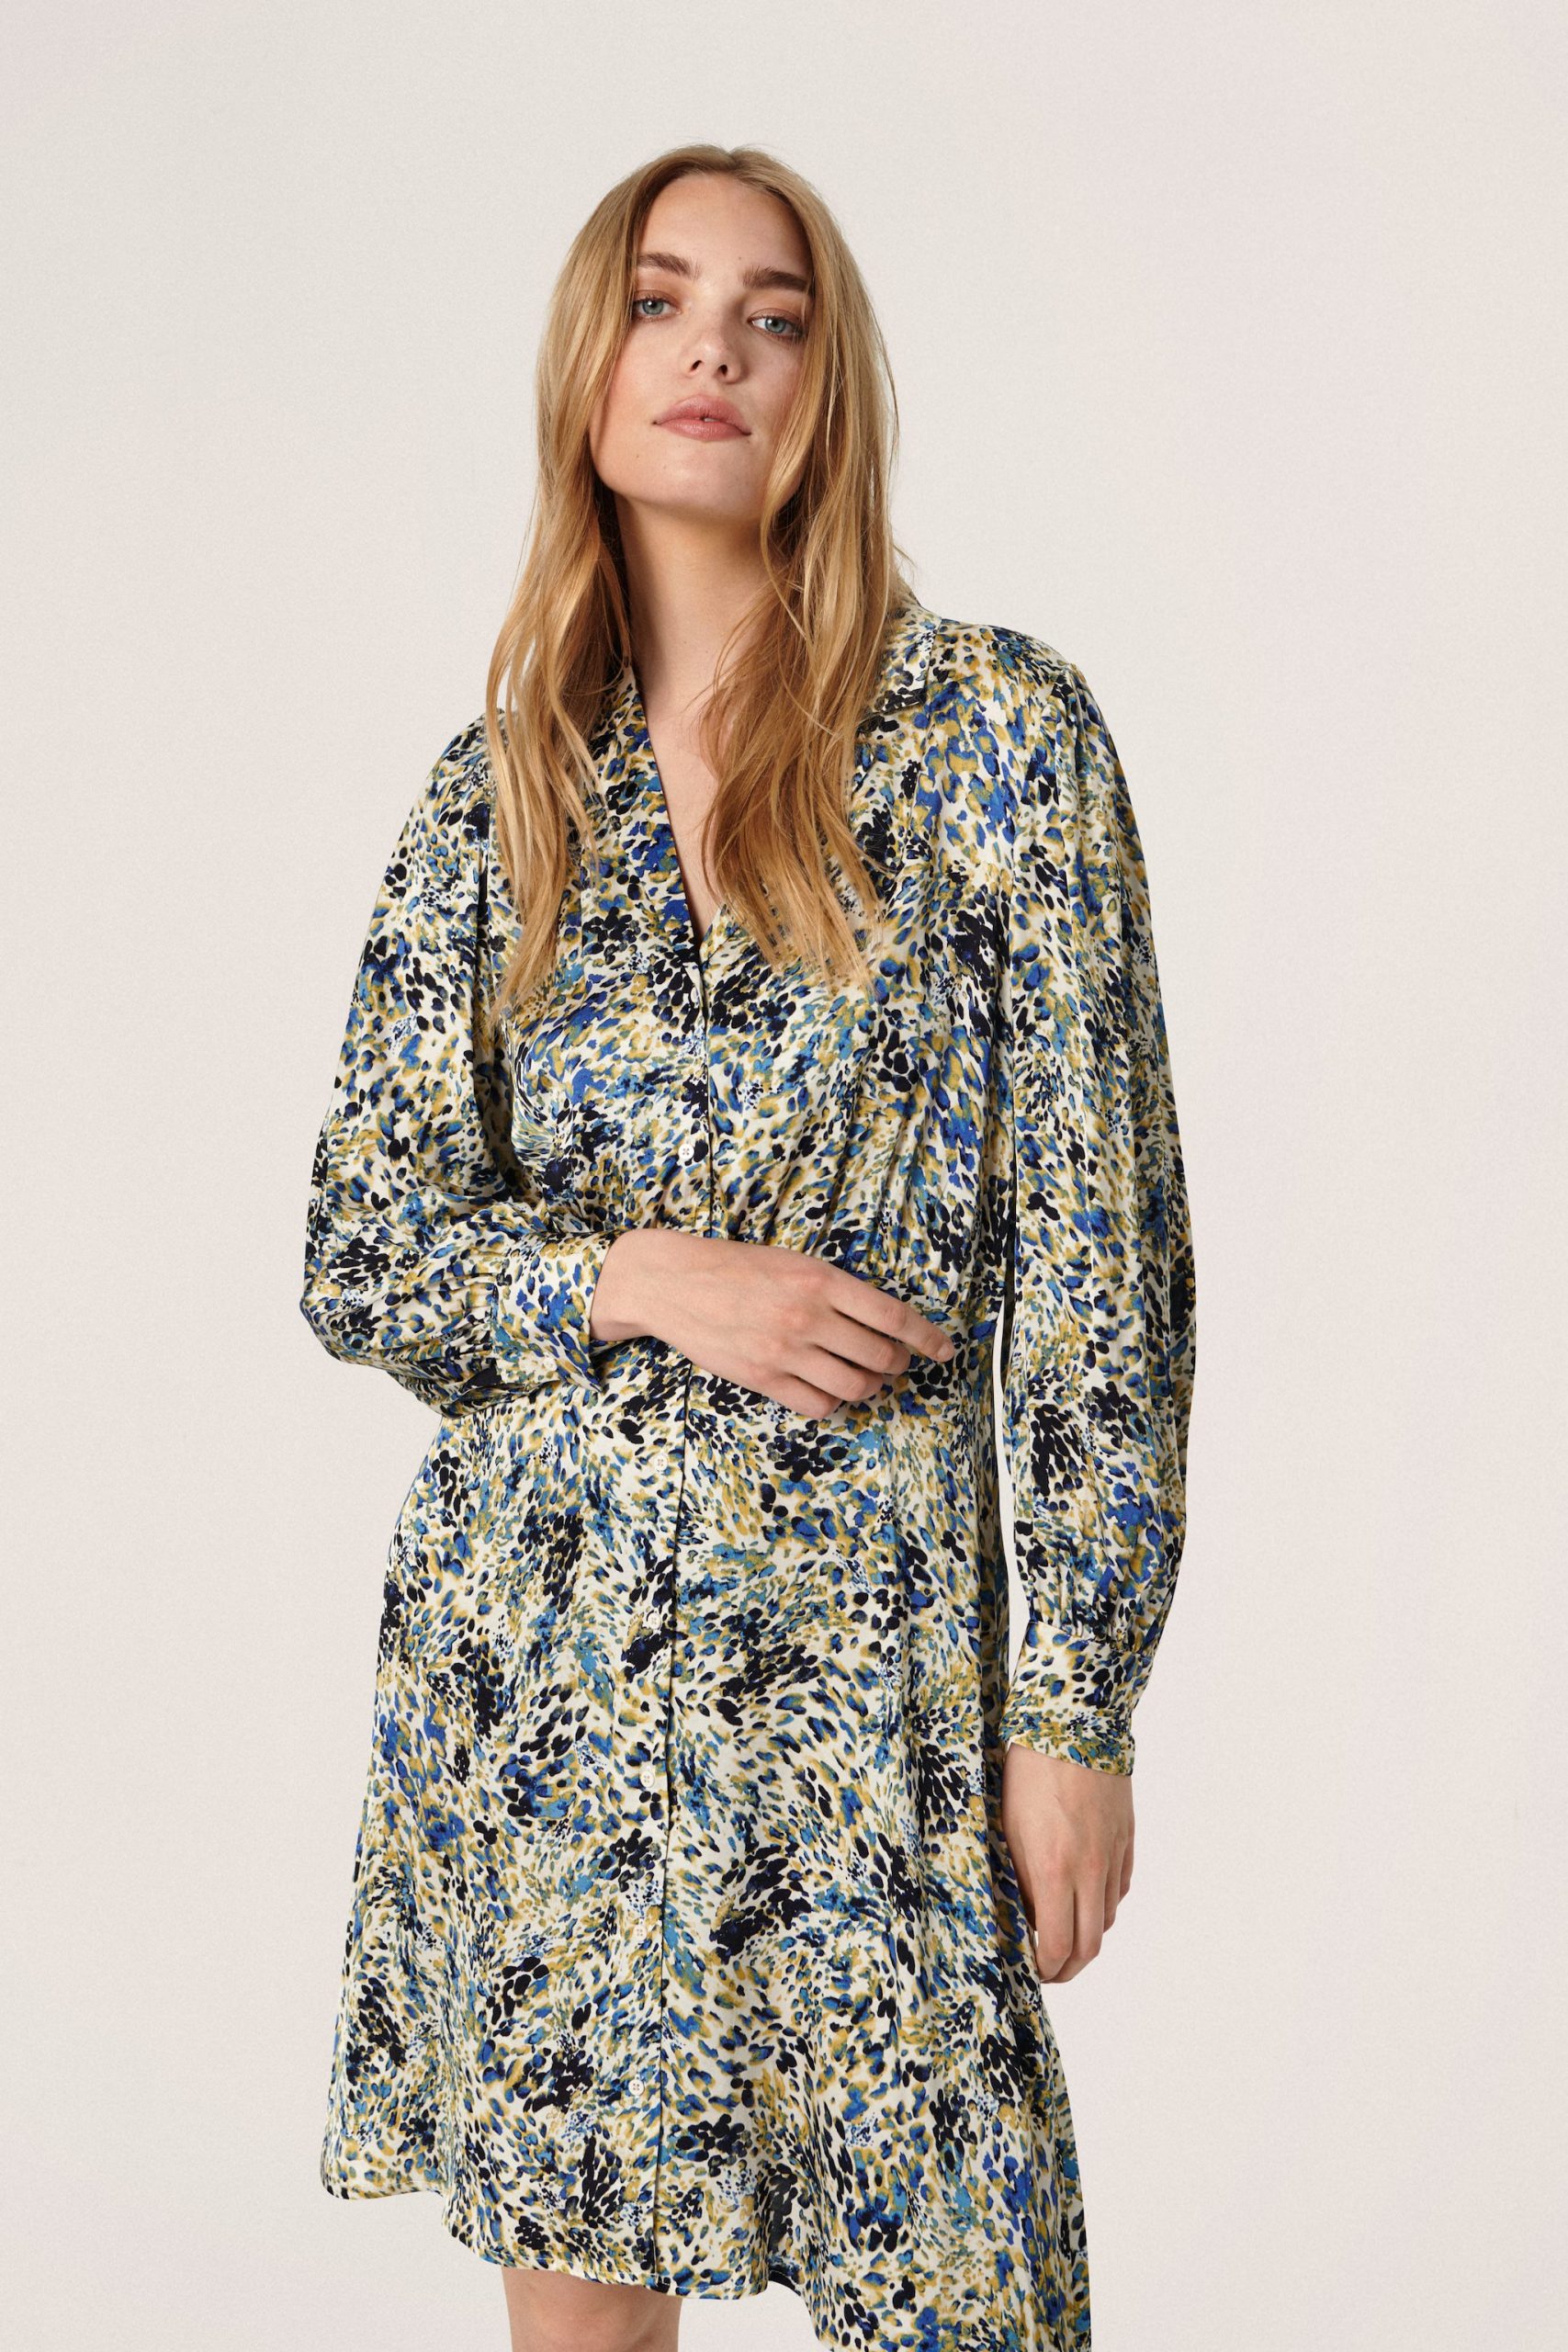 forbinde Luminans Whitney kjoler på udsalg | Spar op til 70% på vores kjoler | Køb online